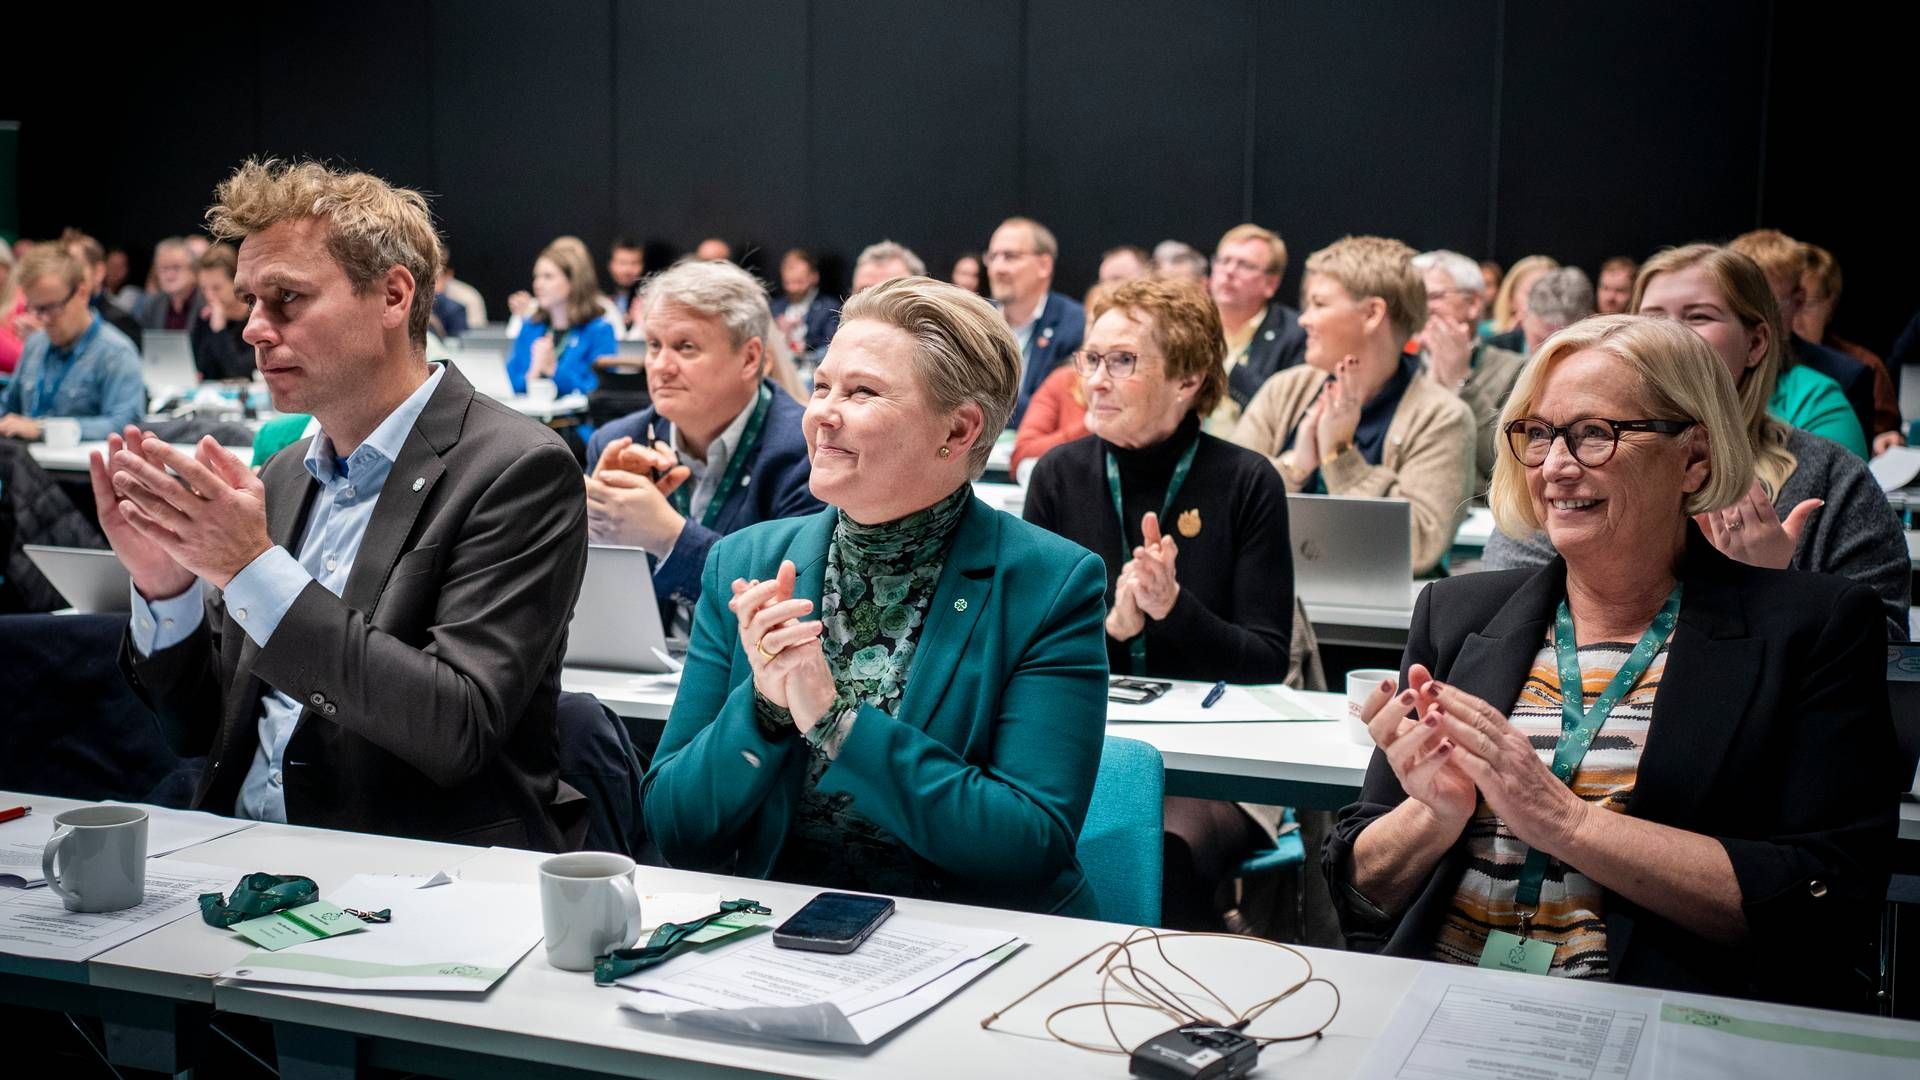 MAKSPRIS PÅ STRØM: Tirsdag skal Senterpartiets landsstyre stemme over om de skal gå inn for makspris på 100 øre/kWh. | Foto: Heiko Junge / NTB